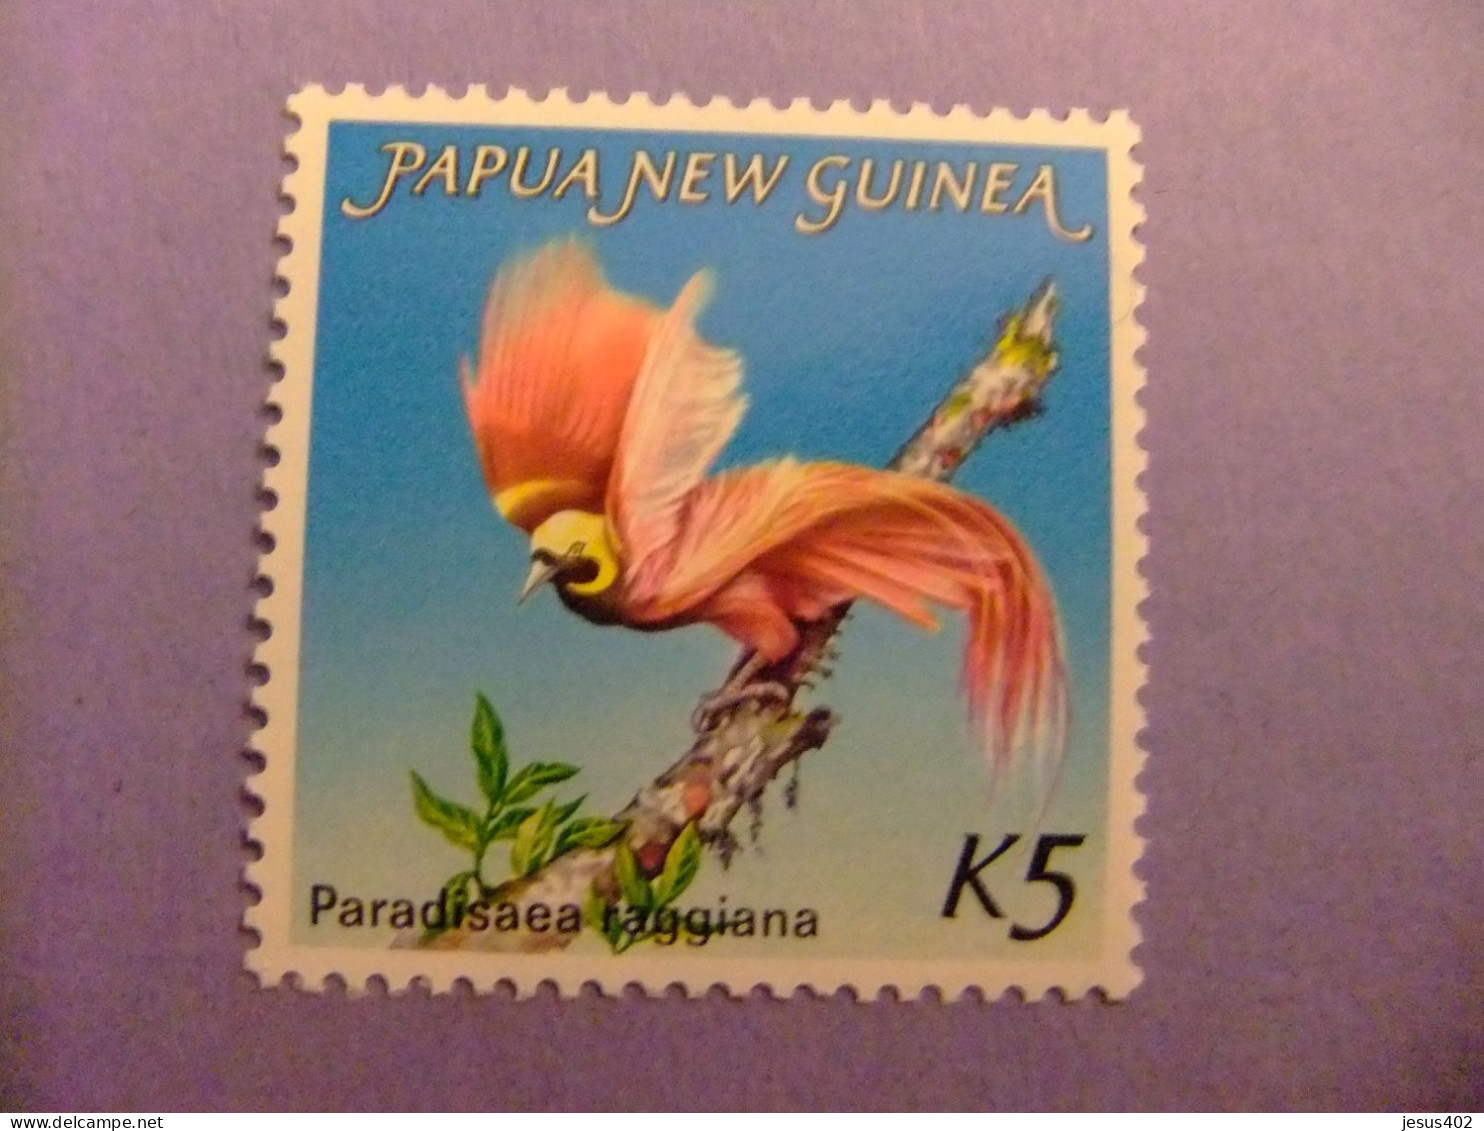 52 PAPUA NEW GUINEA / NUEVA GUINEA 1984 / PARADISAEA RAGGIANA / YVERT 477 MNH - Gallinaceans & Pheasants